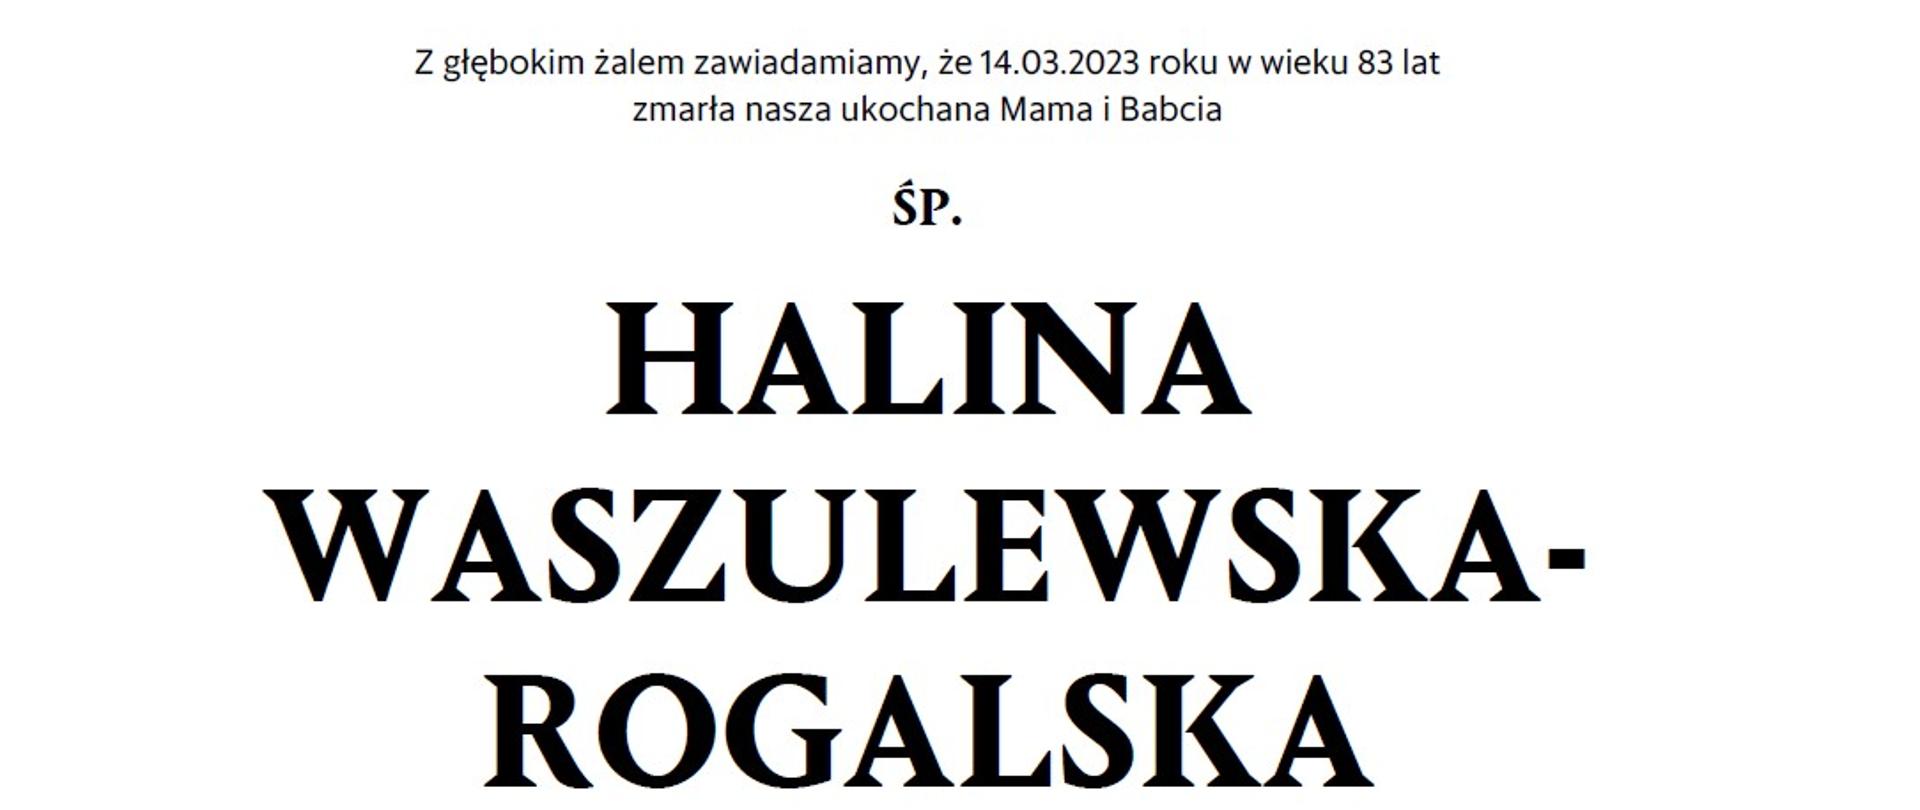 Nekrolog Pani prof. Haliny Waszulewskiej - Rogalskiej